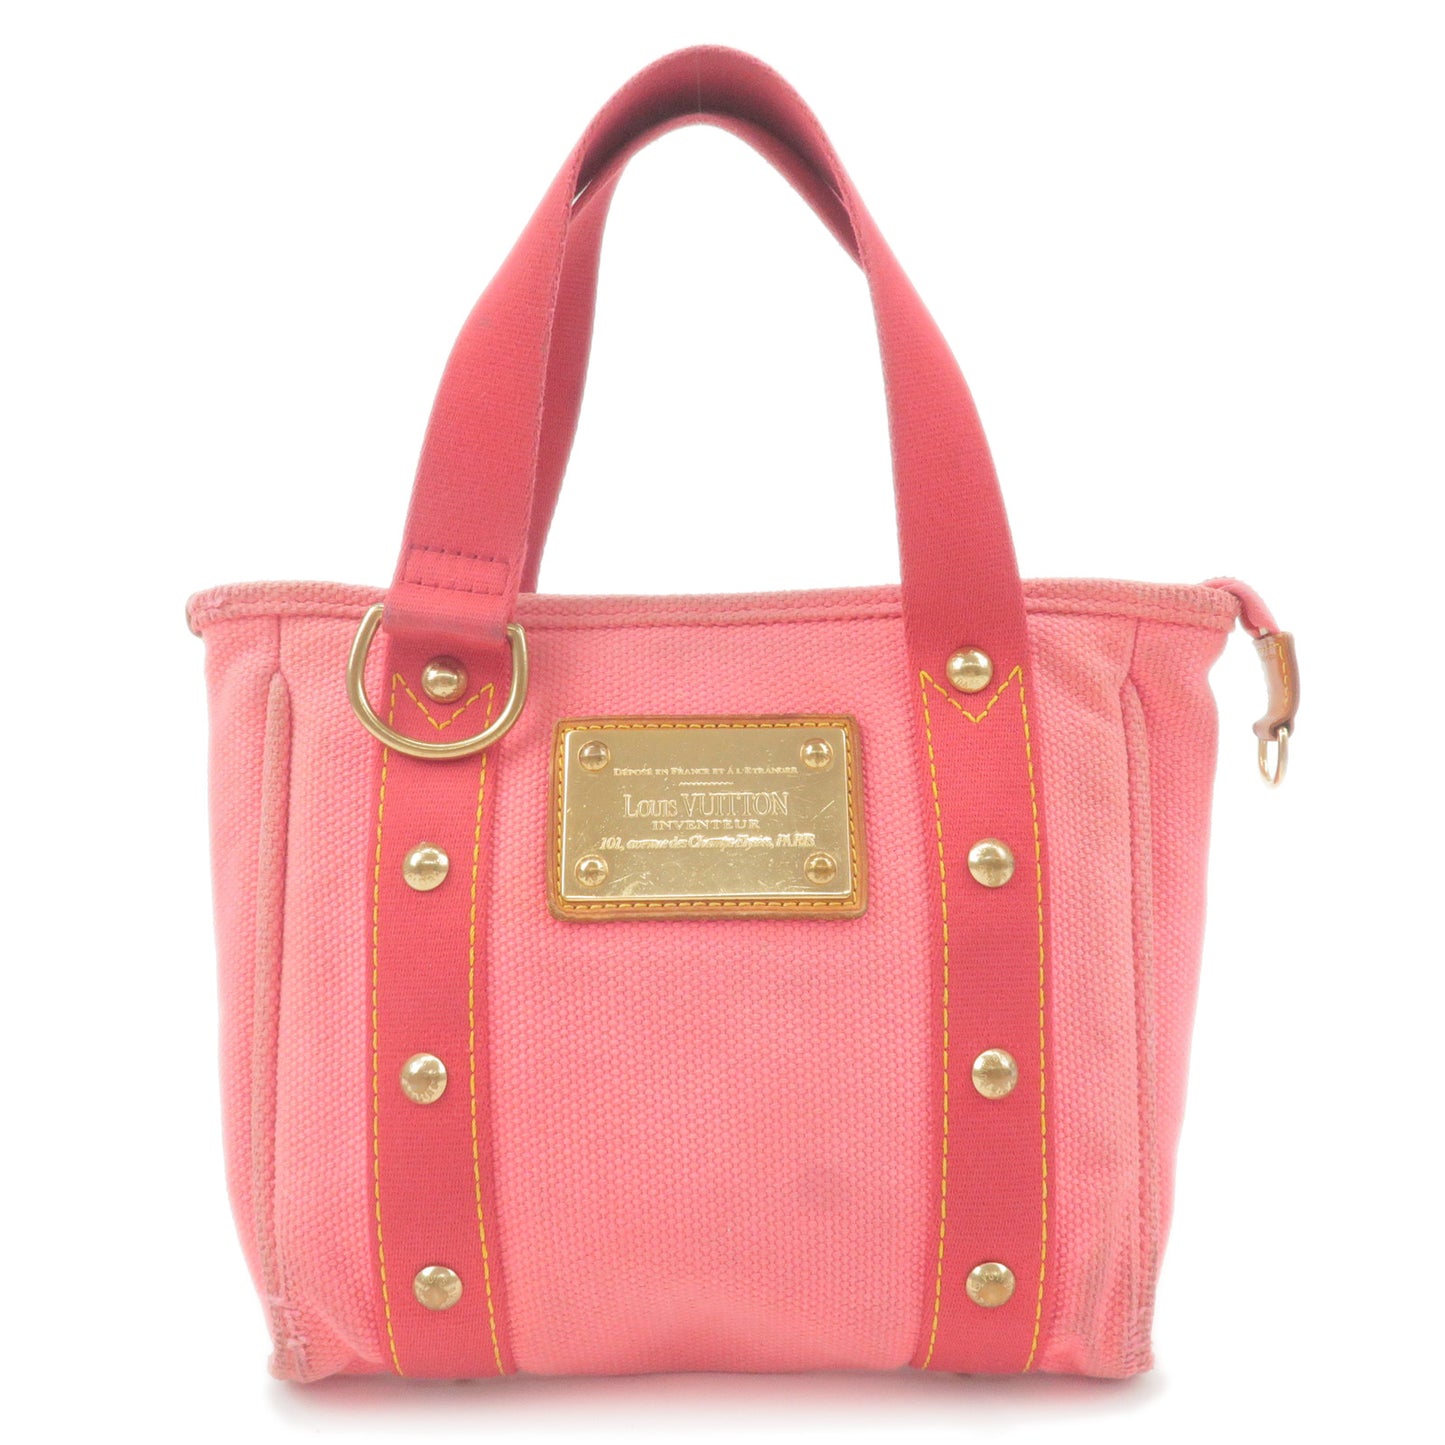 Louis Vuitton Antigua Cabas Pm Handbag